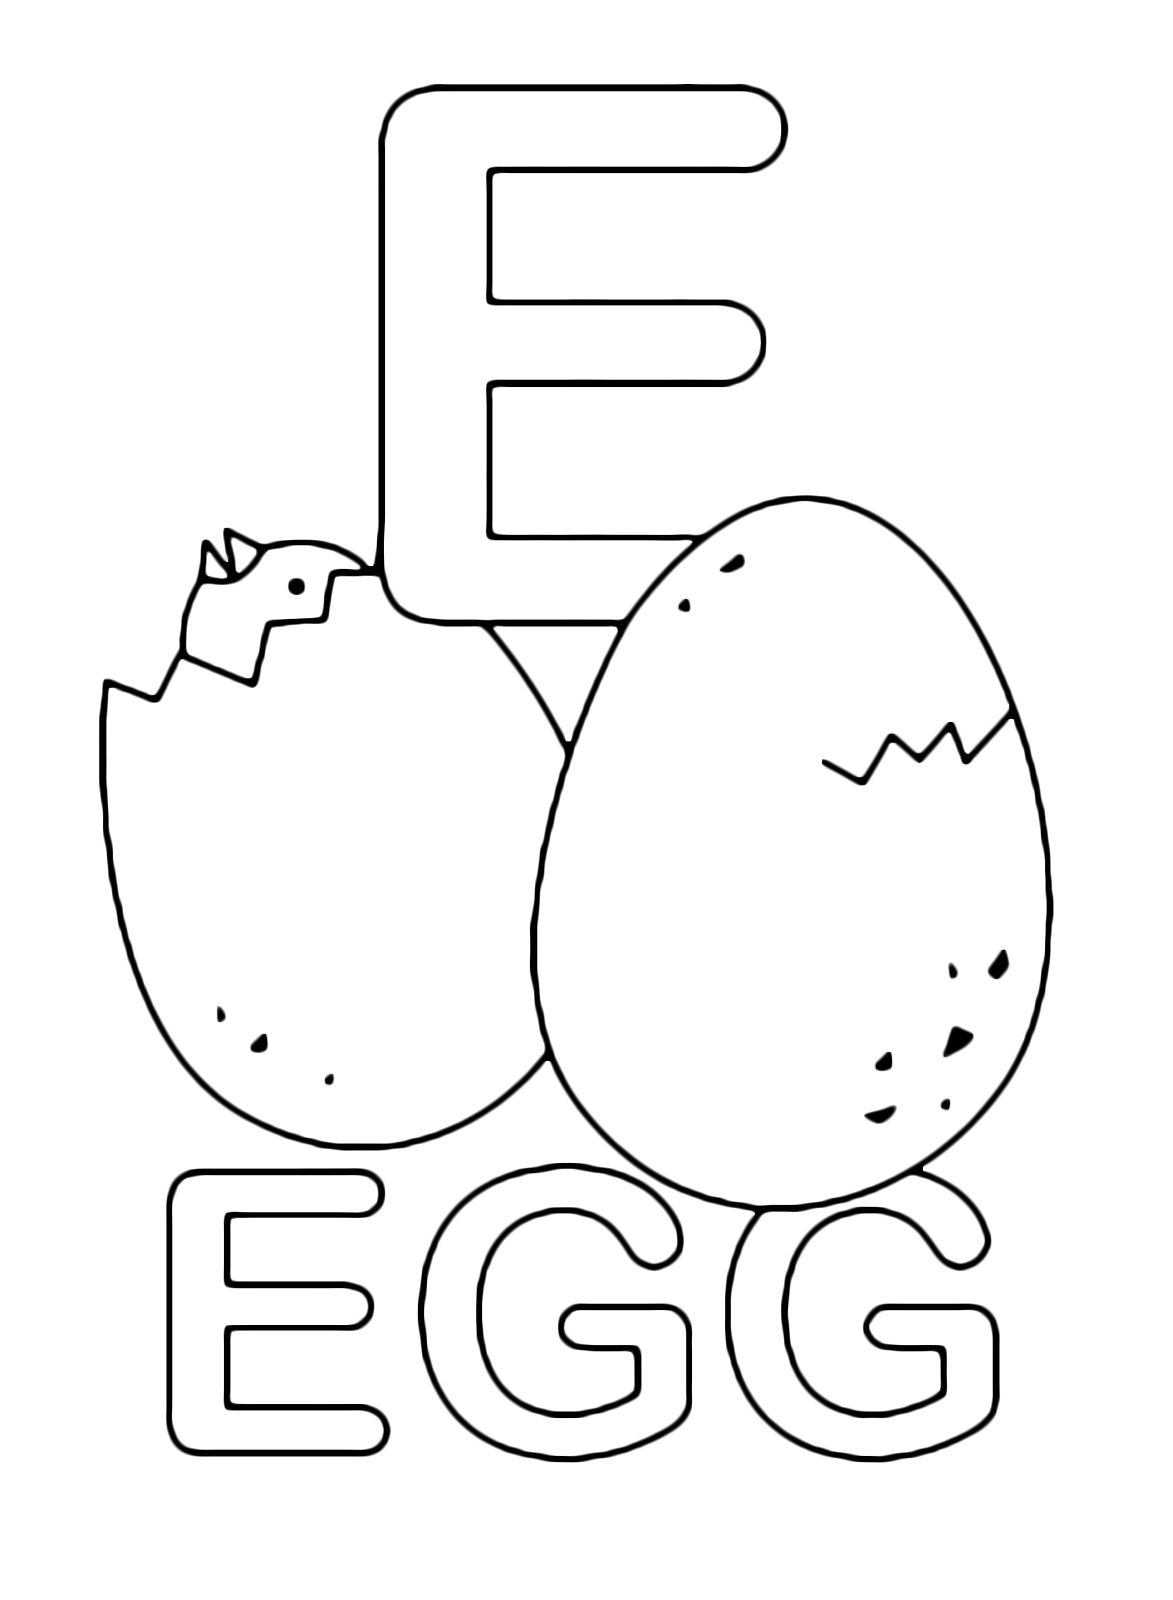 Lettere e numeri - Lettera E in stampatello di egg (uovo) in Inglese